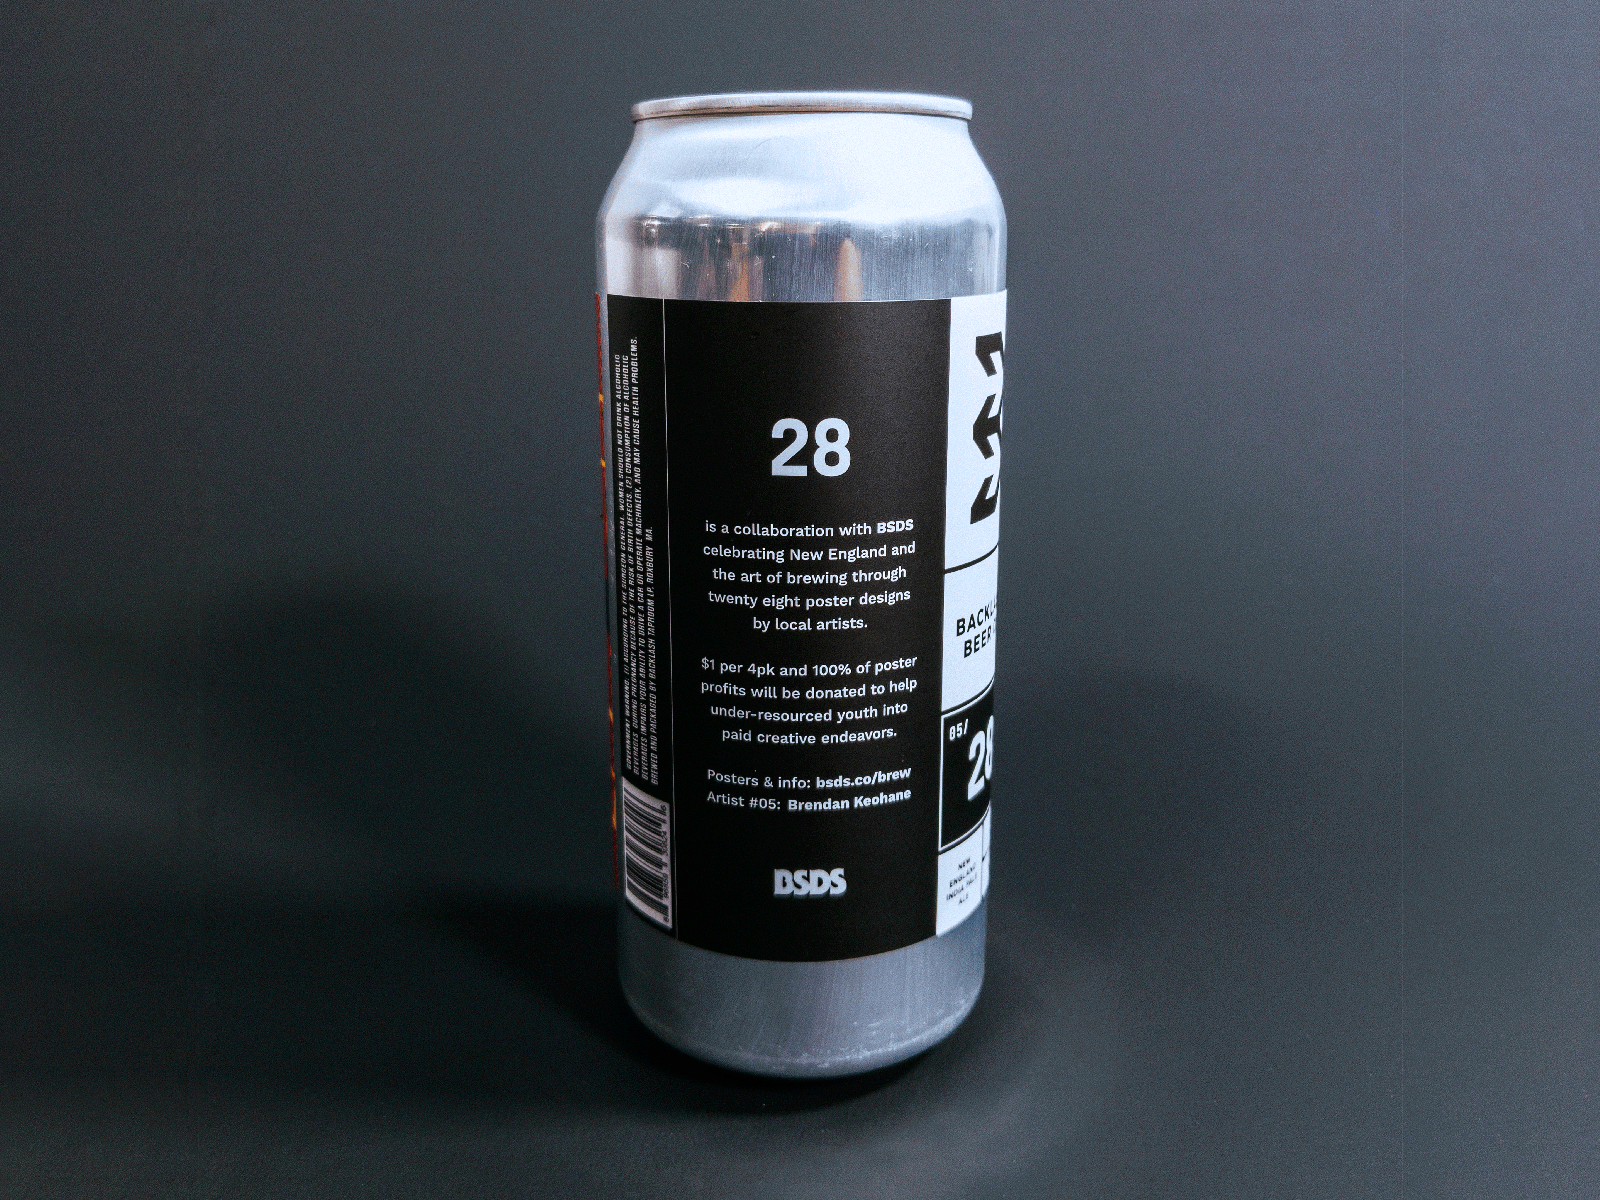 BSDS x Backlash "28" Beer Can Label Series